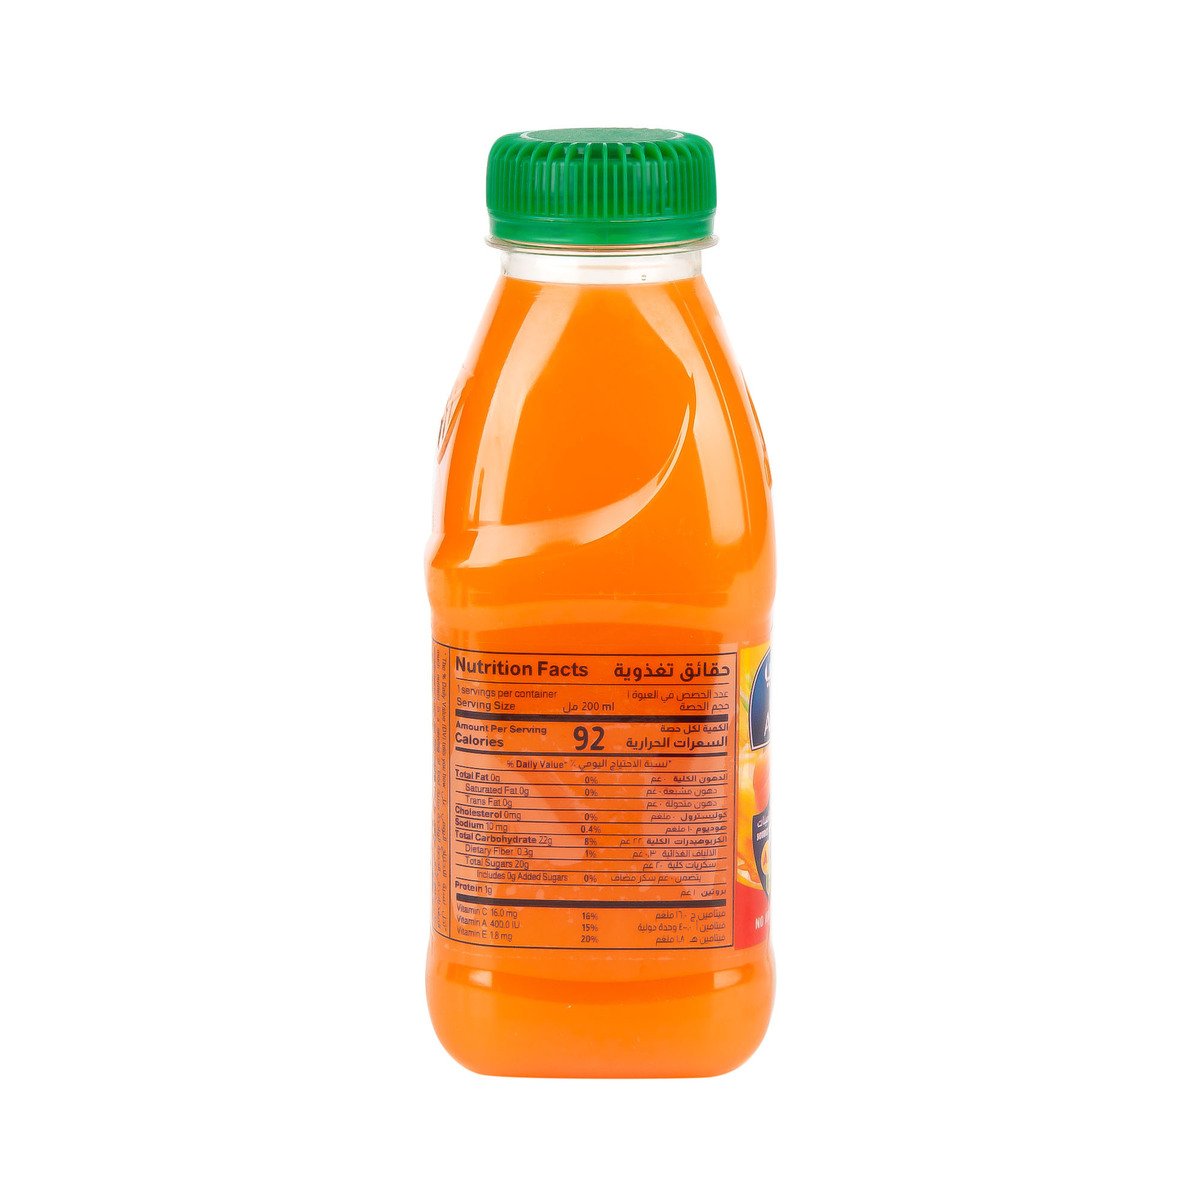 Almarai Mixed Fruit Orange Carrot Juice 200 ml